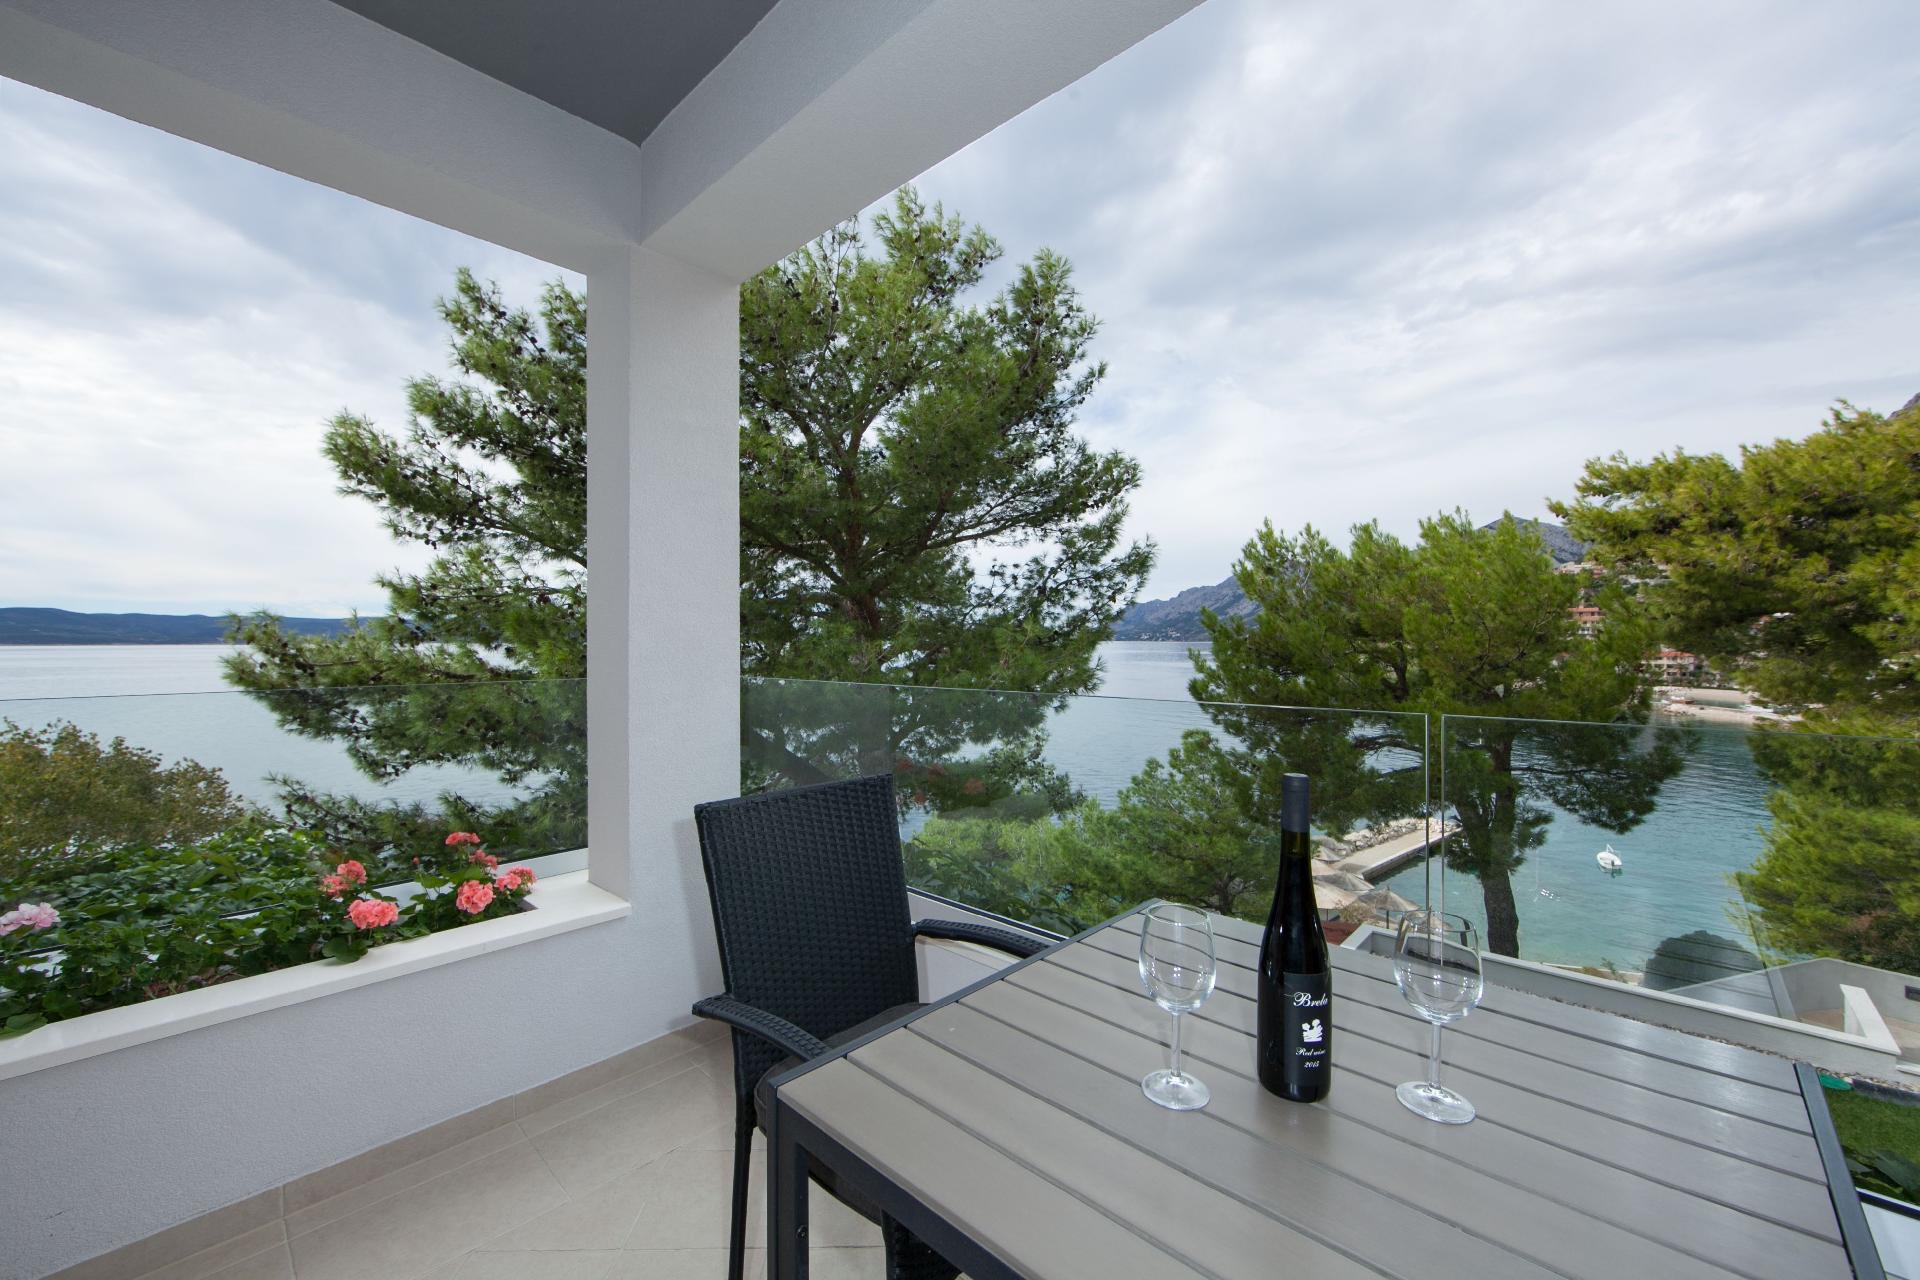 Studio mit Balkon für drei Personen Ferienhaus in Europa